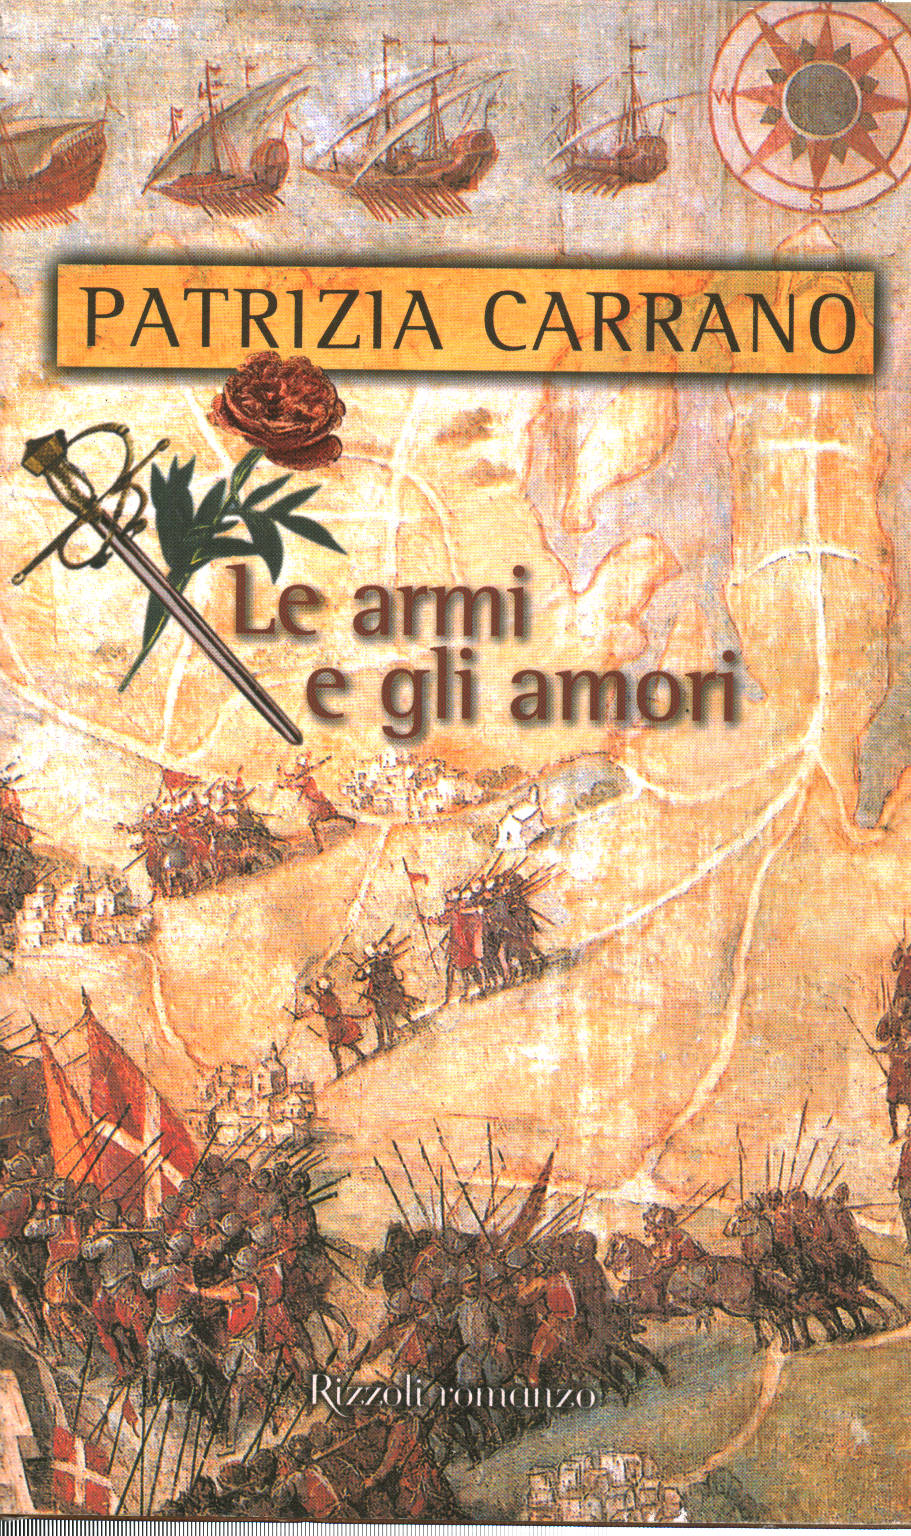 Le armi e gli amori, Patrizia Carrano